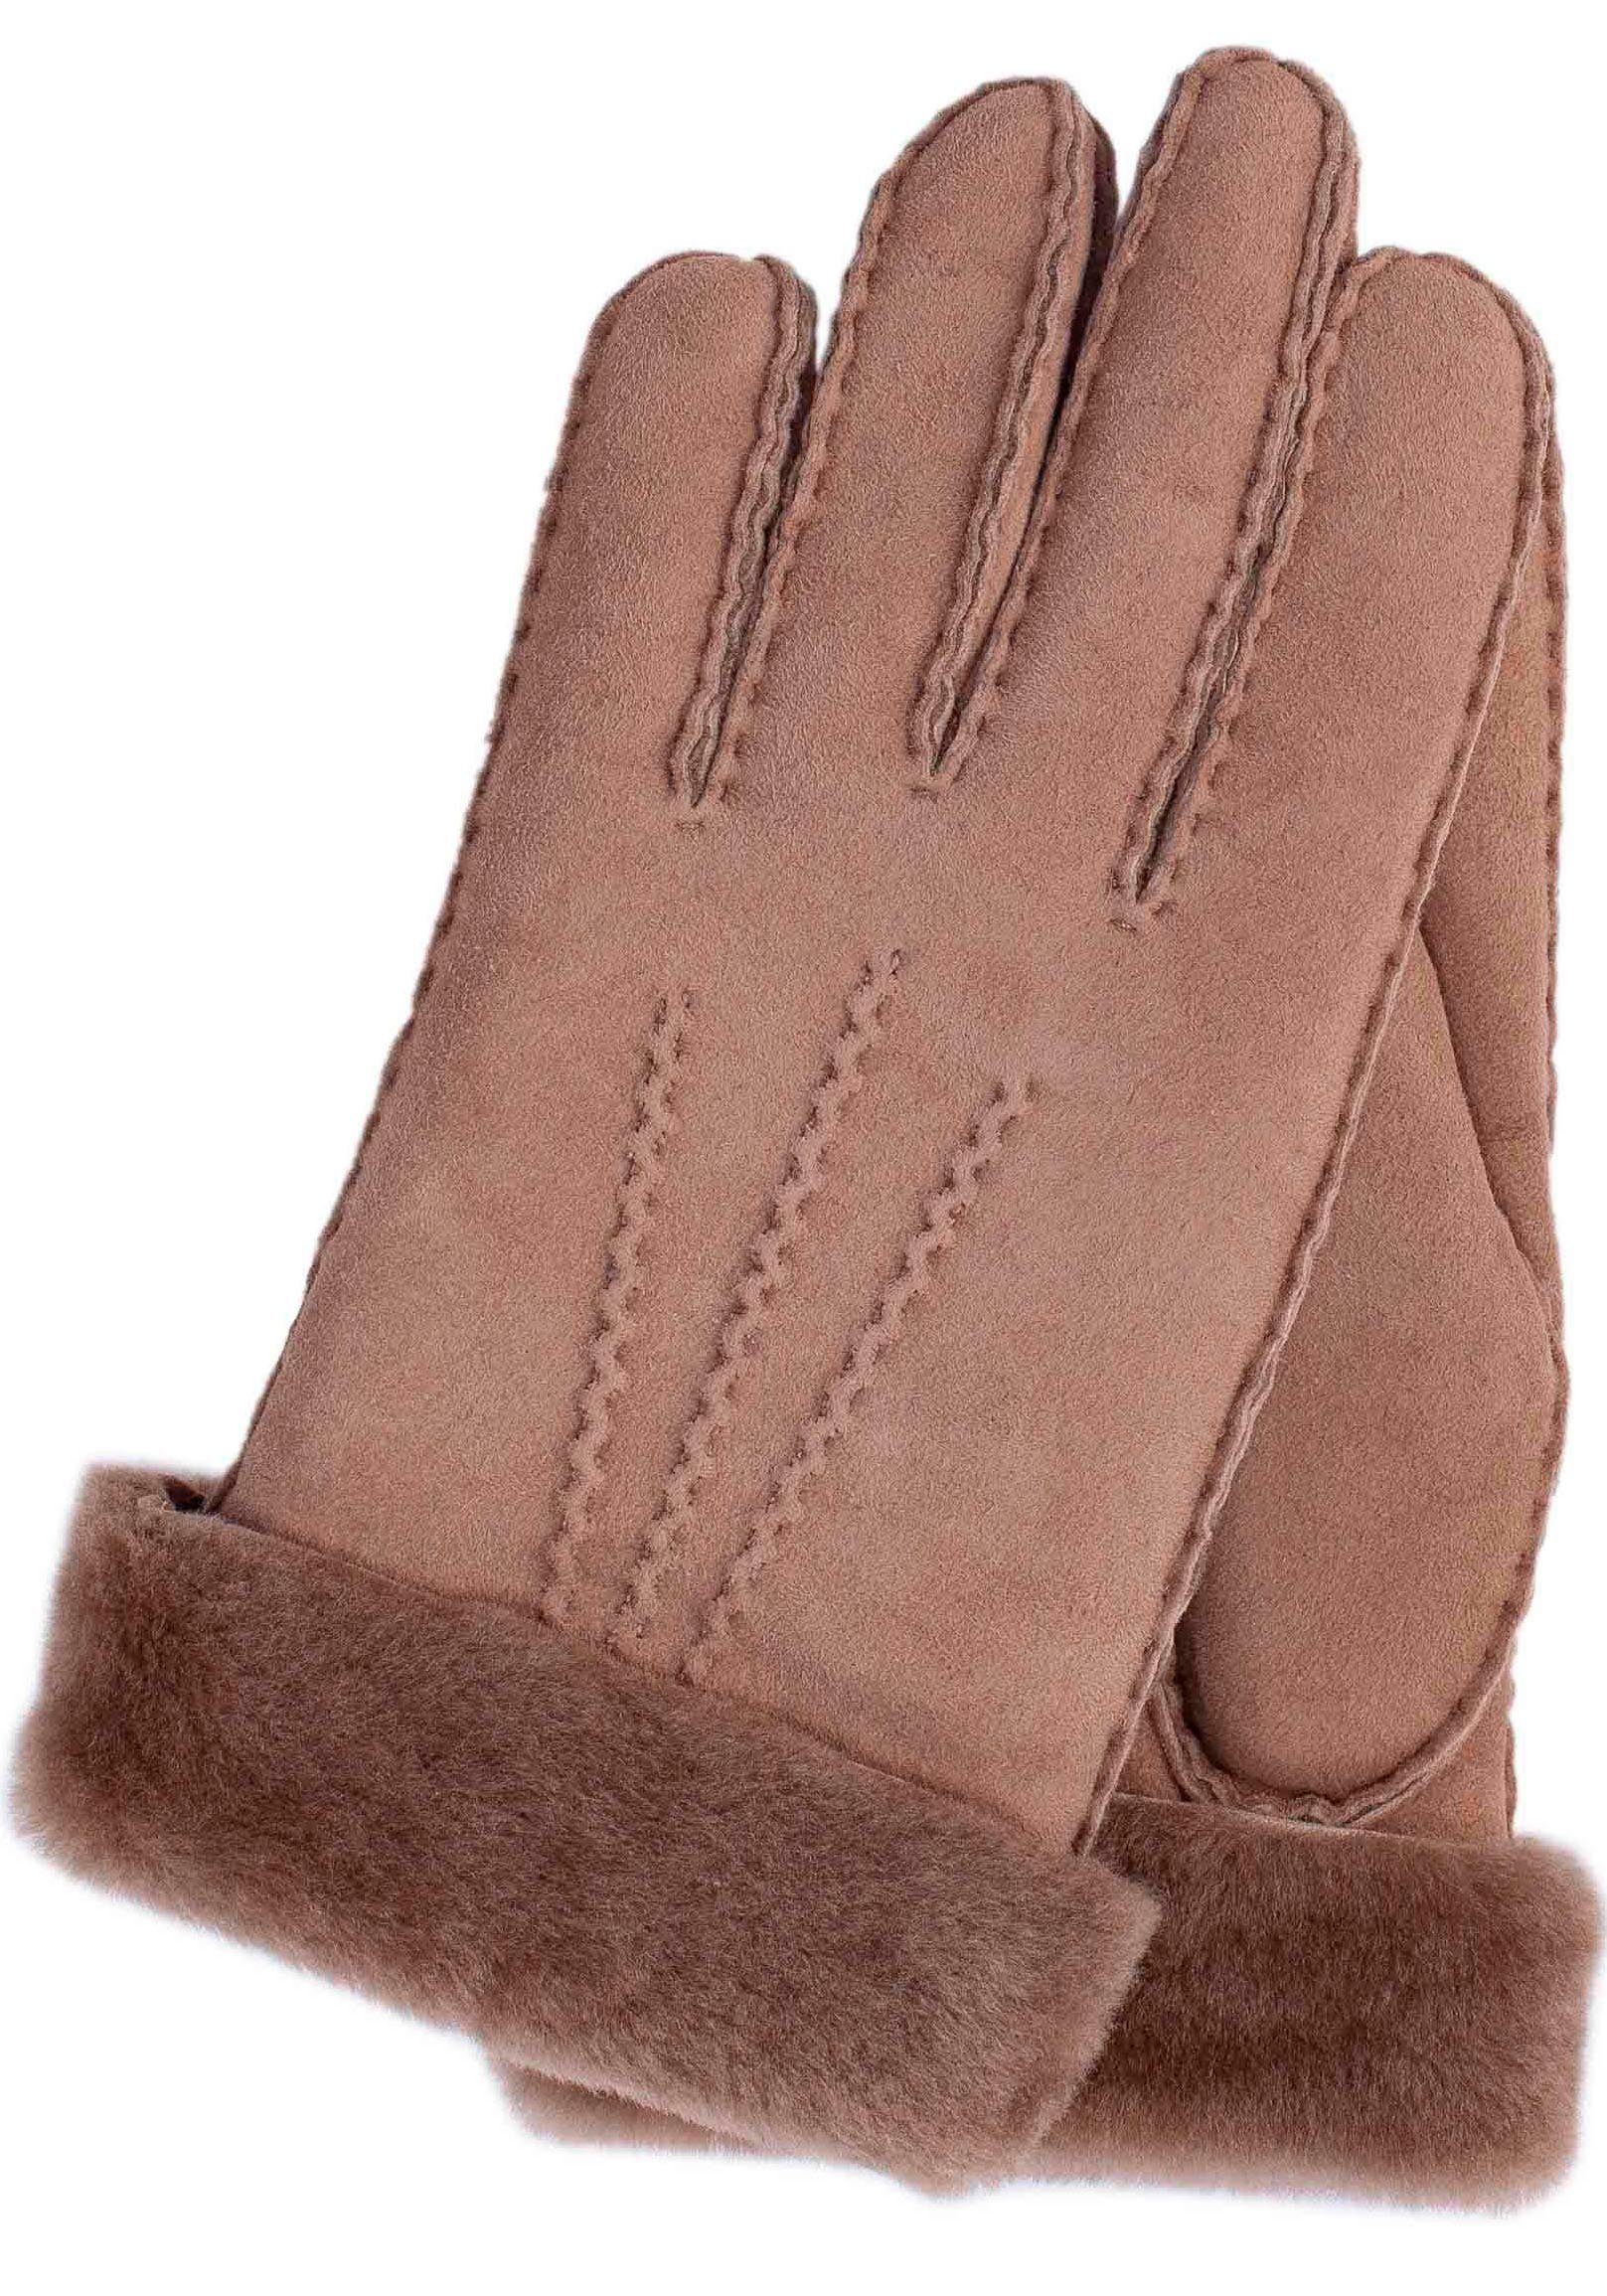 KESSLER Lederhandschuhe klassiches Design mit 3 Aufnähten und breitem Umschlag nougat | Handschuhe